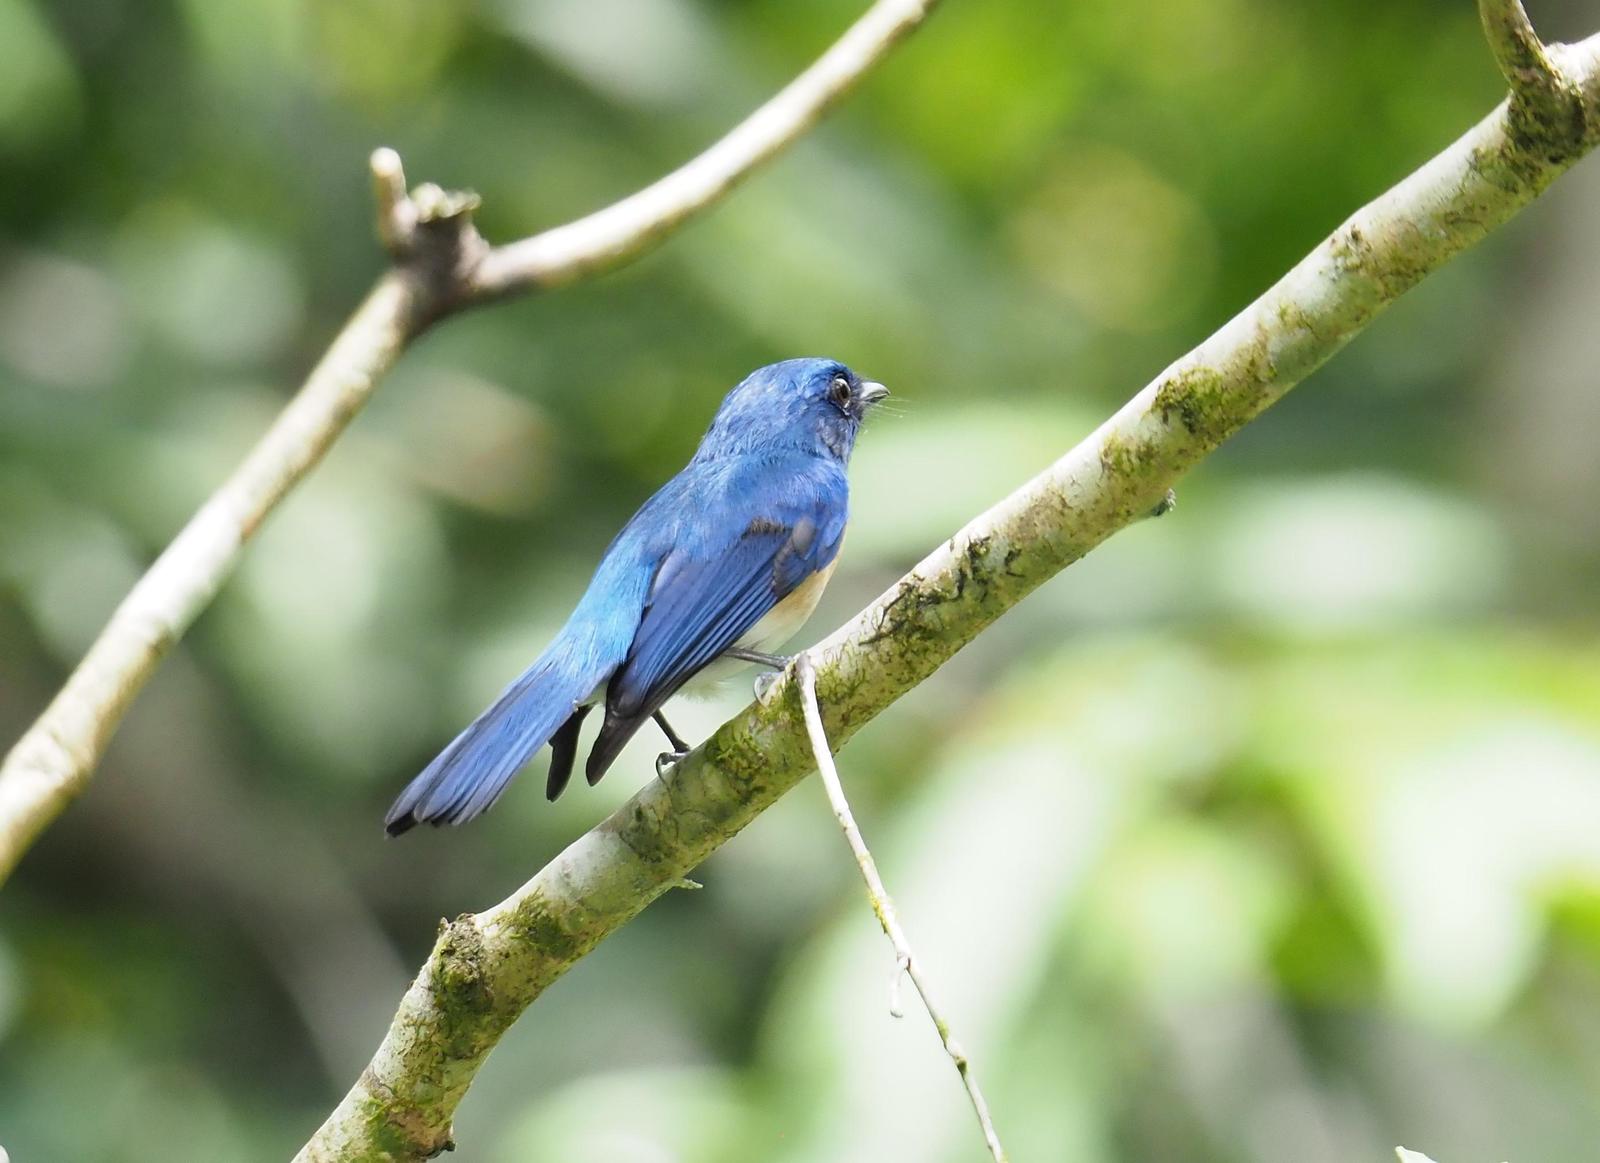 Malaysian Blue Flycatcher Photo by Kristin Vigander